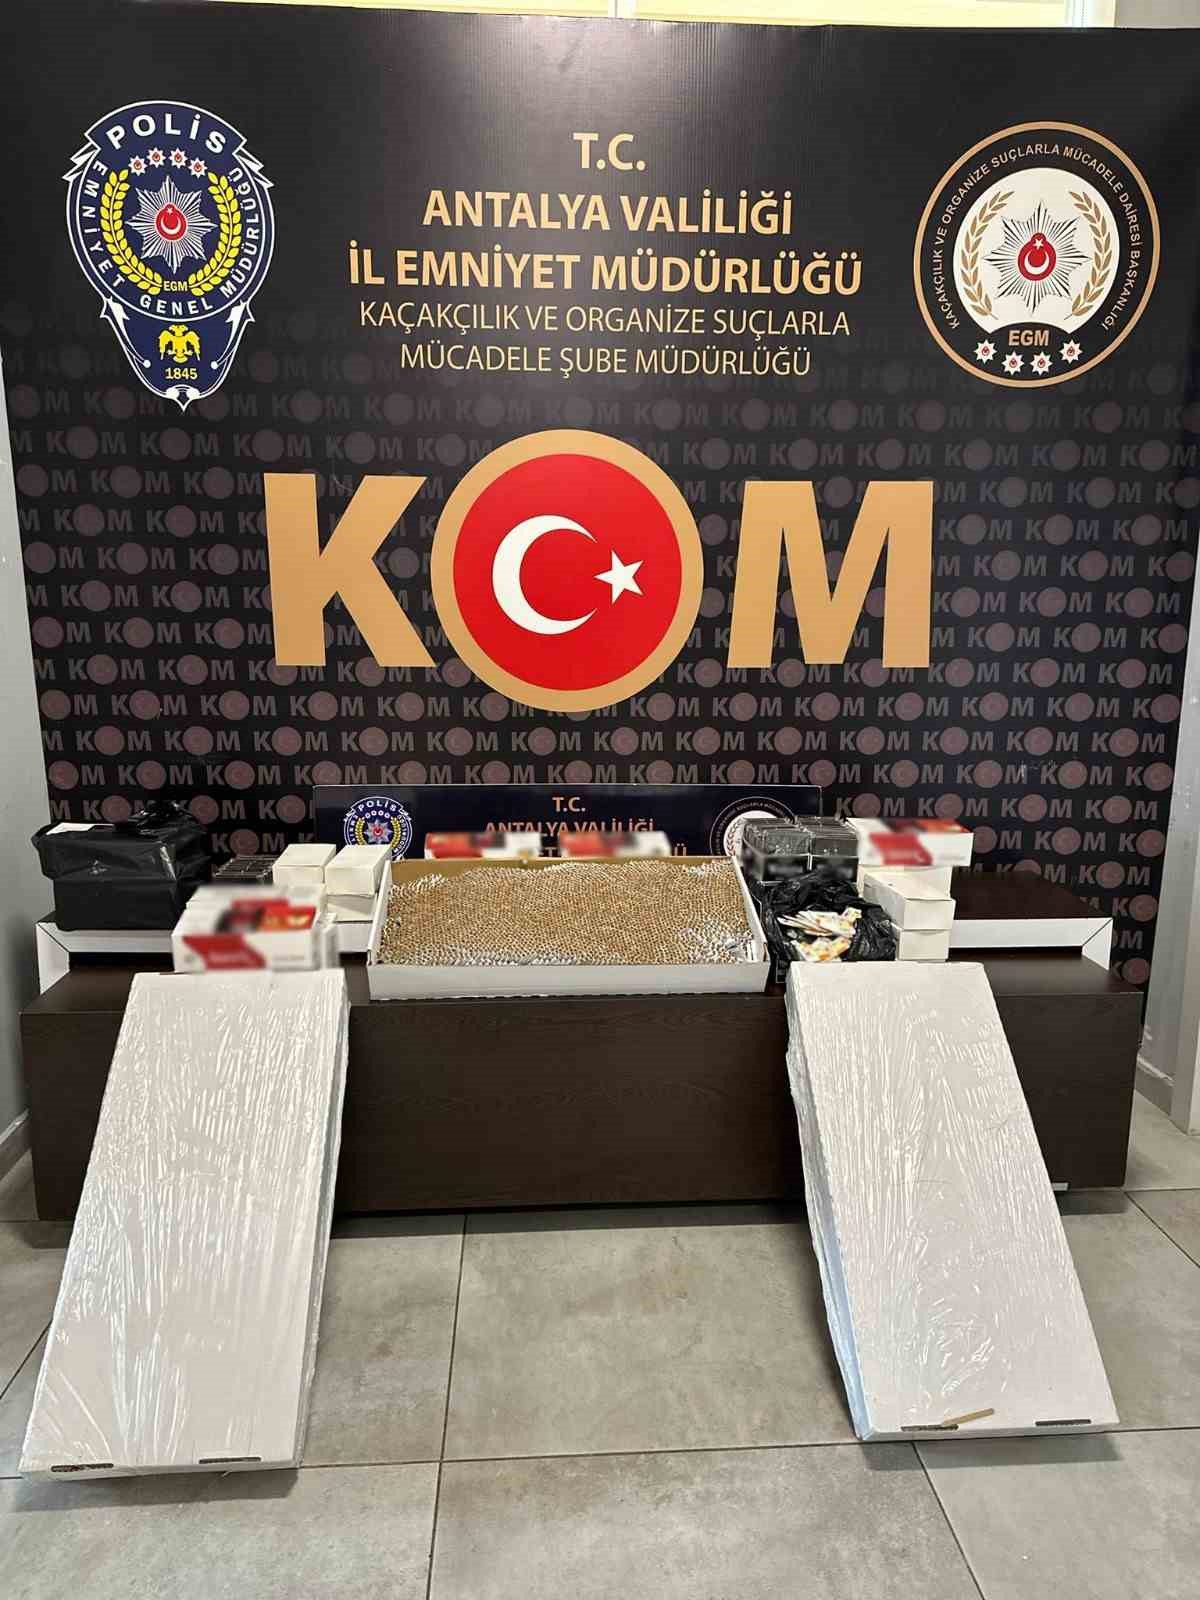 Antalya’da kaçakçılık yapan 14 şüpheliye adli işlem
